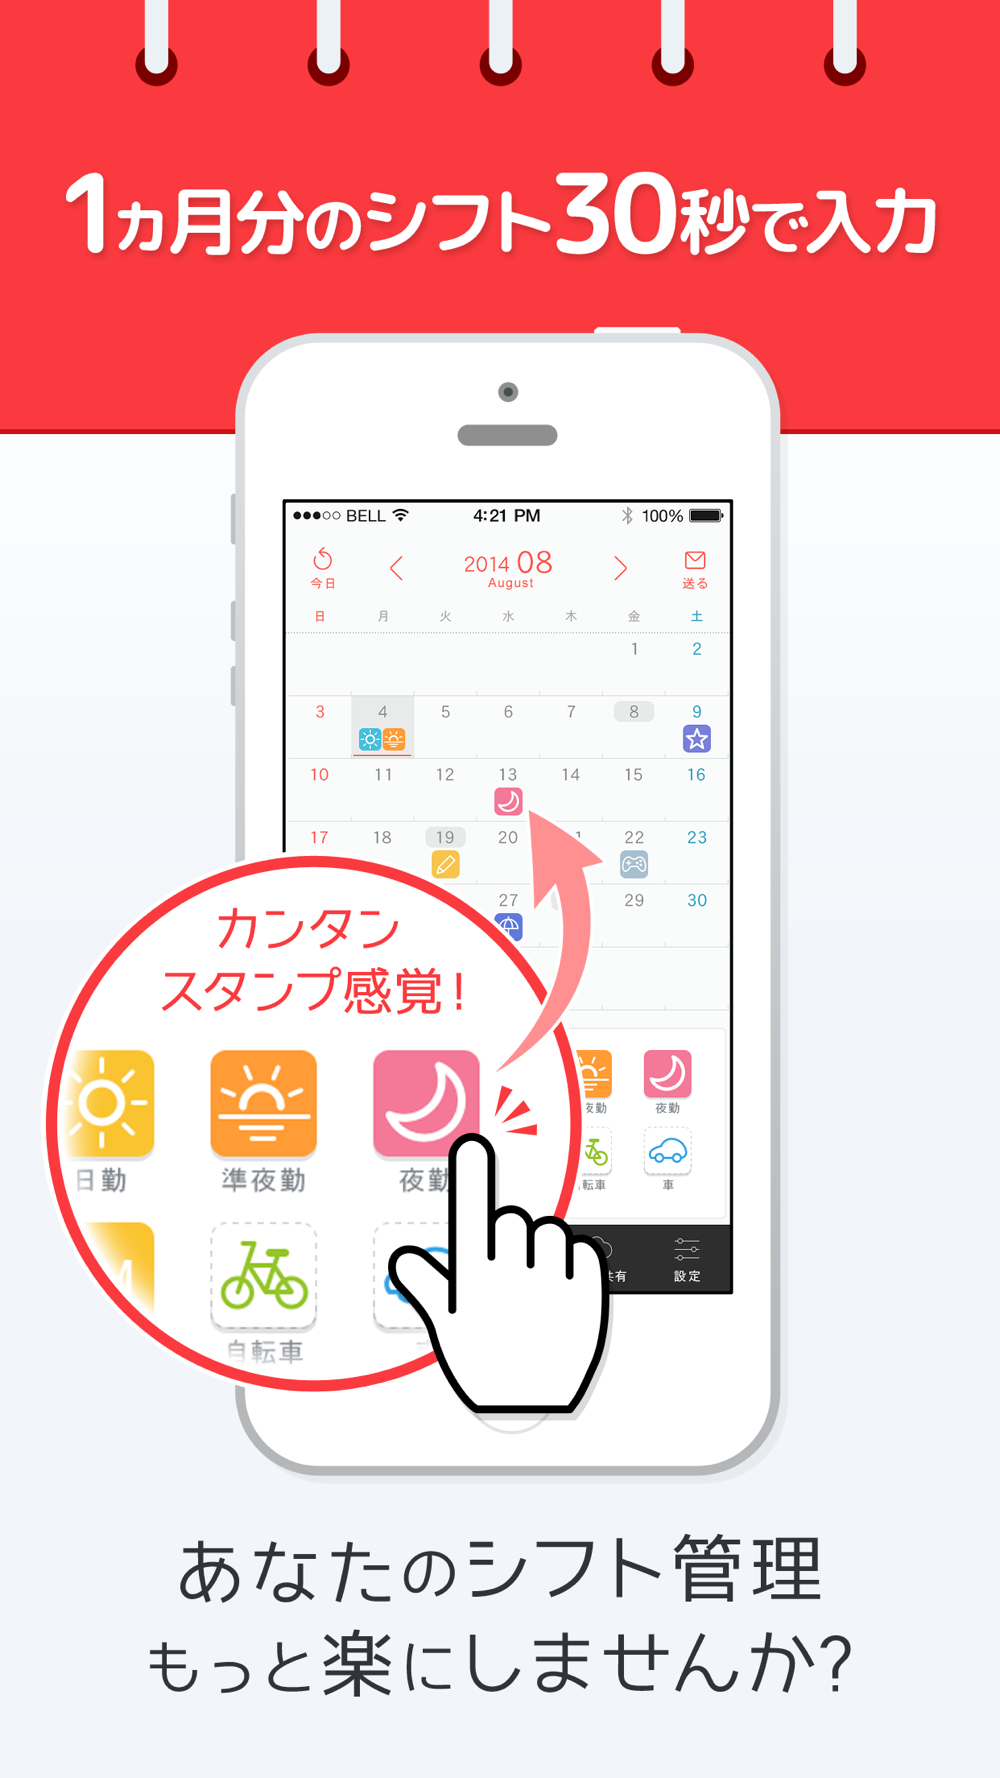 シフト管理dx スケジュール共有カレンダー Free Download App For Iphone Steprimo Com